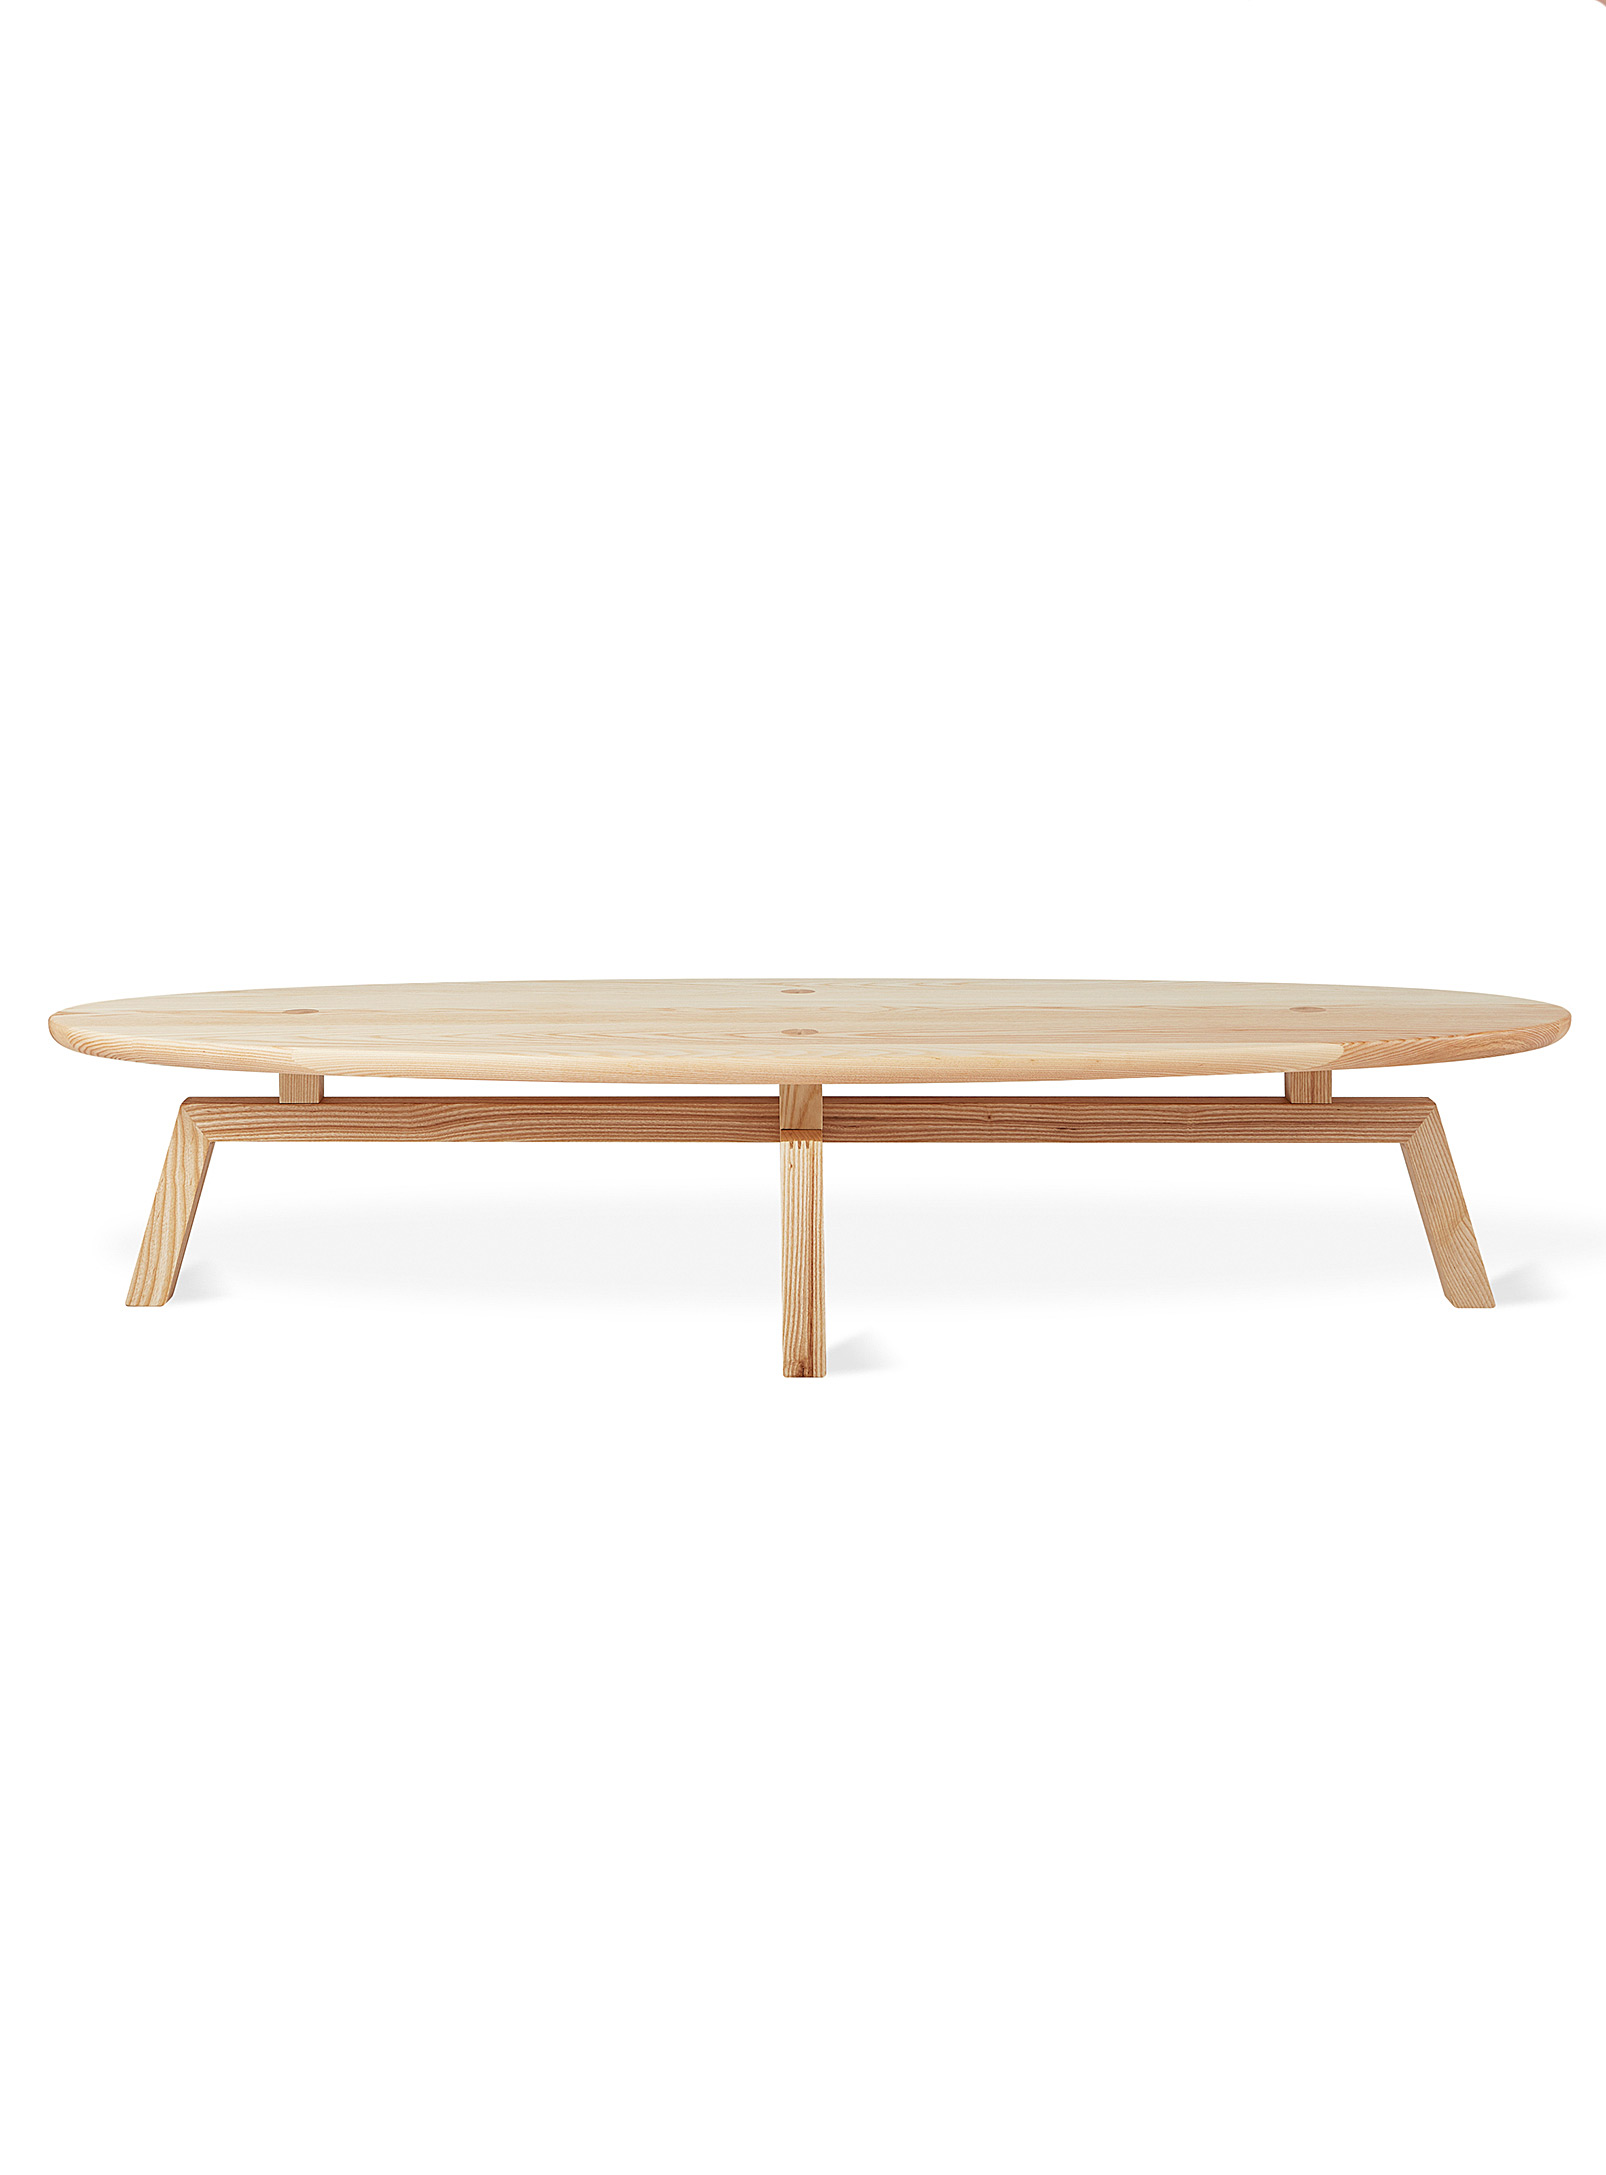 Gus - La grande table basse ovale en bois